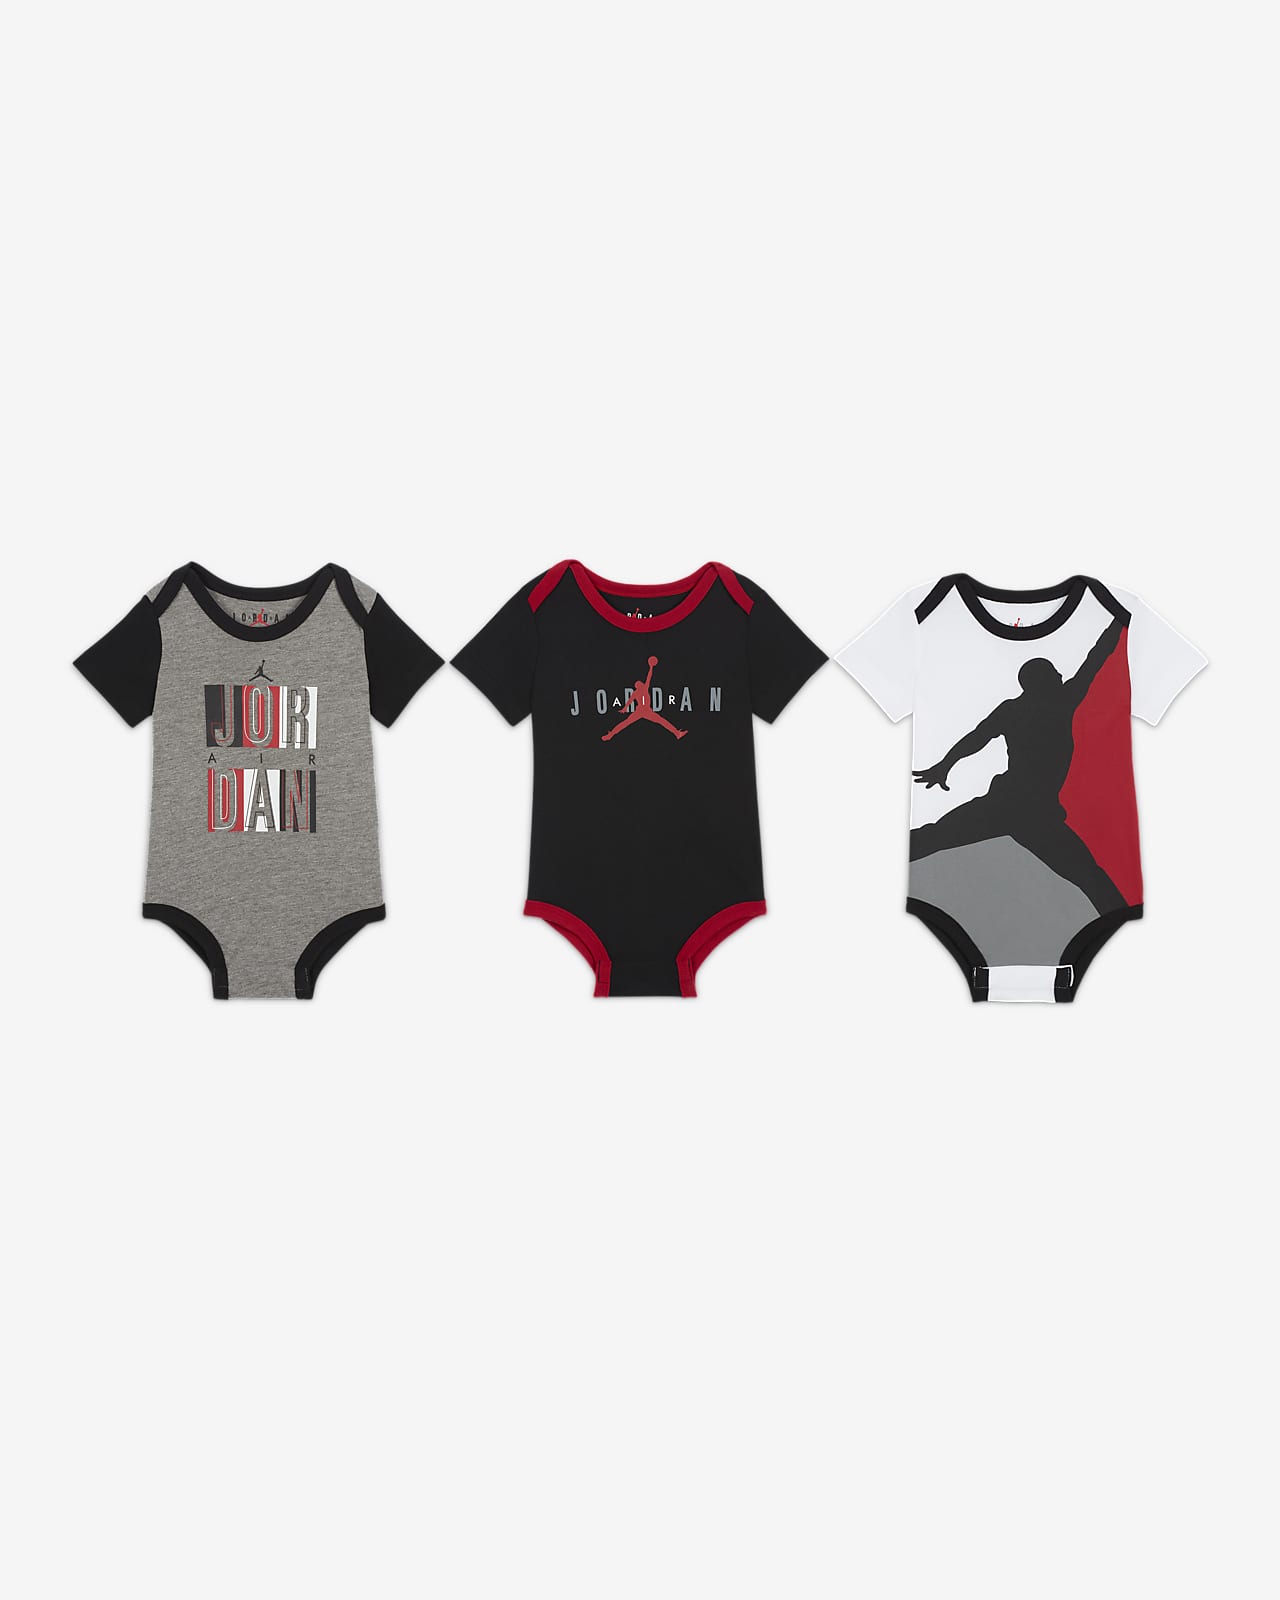 Conjuntos para bebé Jordan (0 a 9 meses) (3 piezas). Nike.com